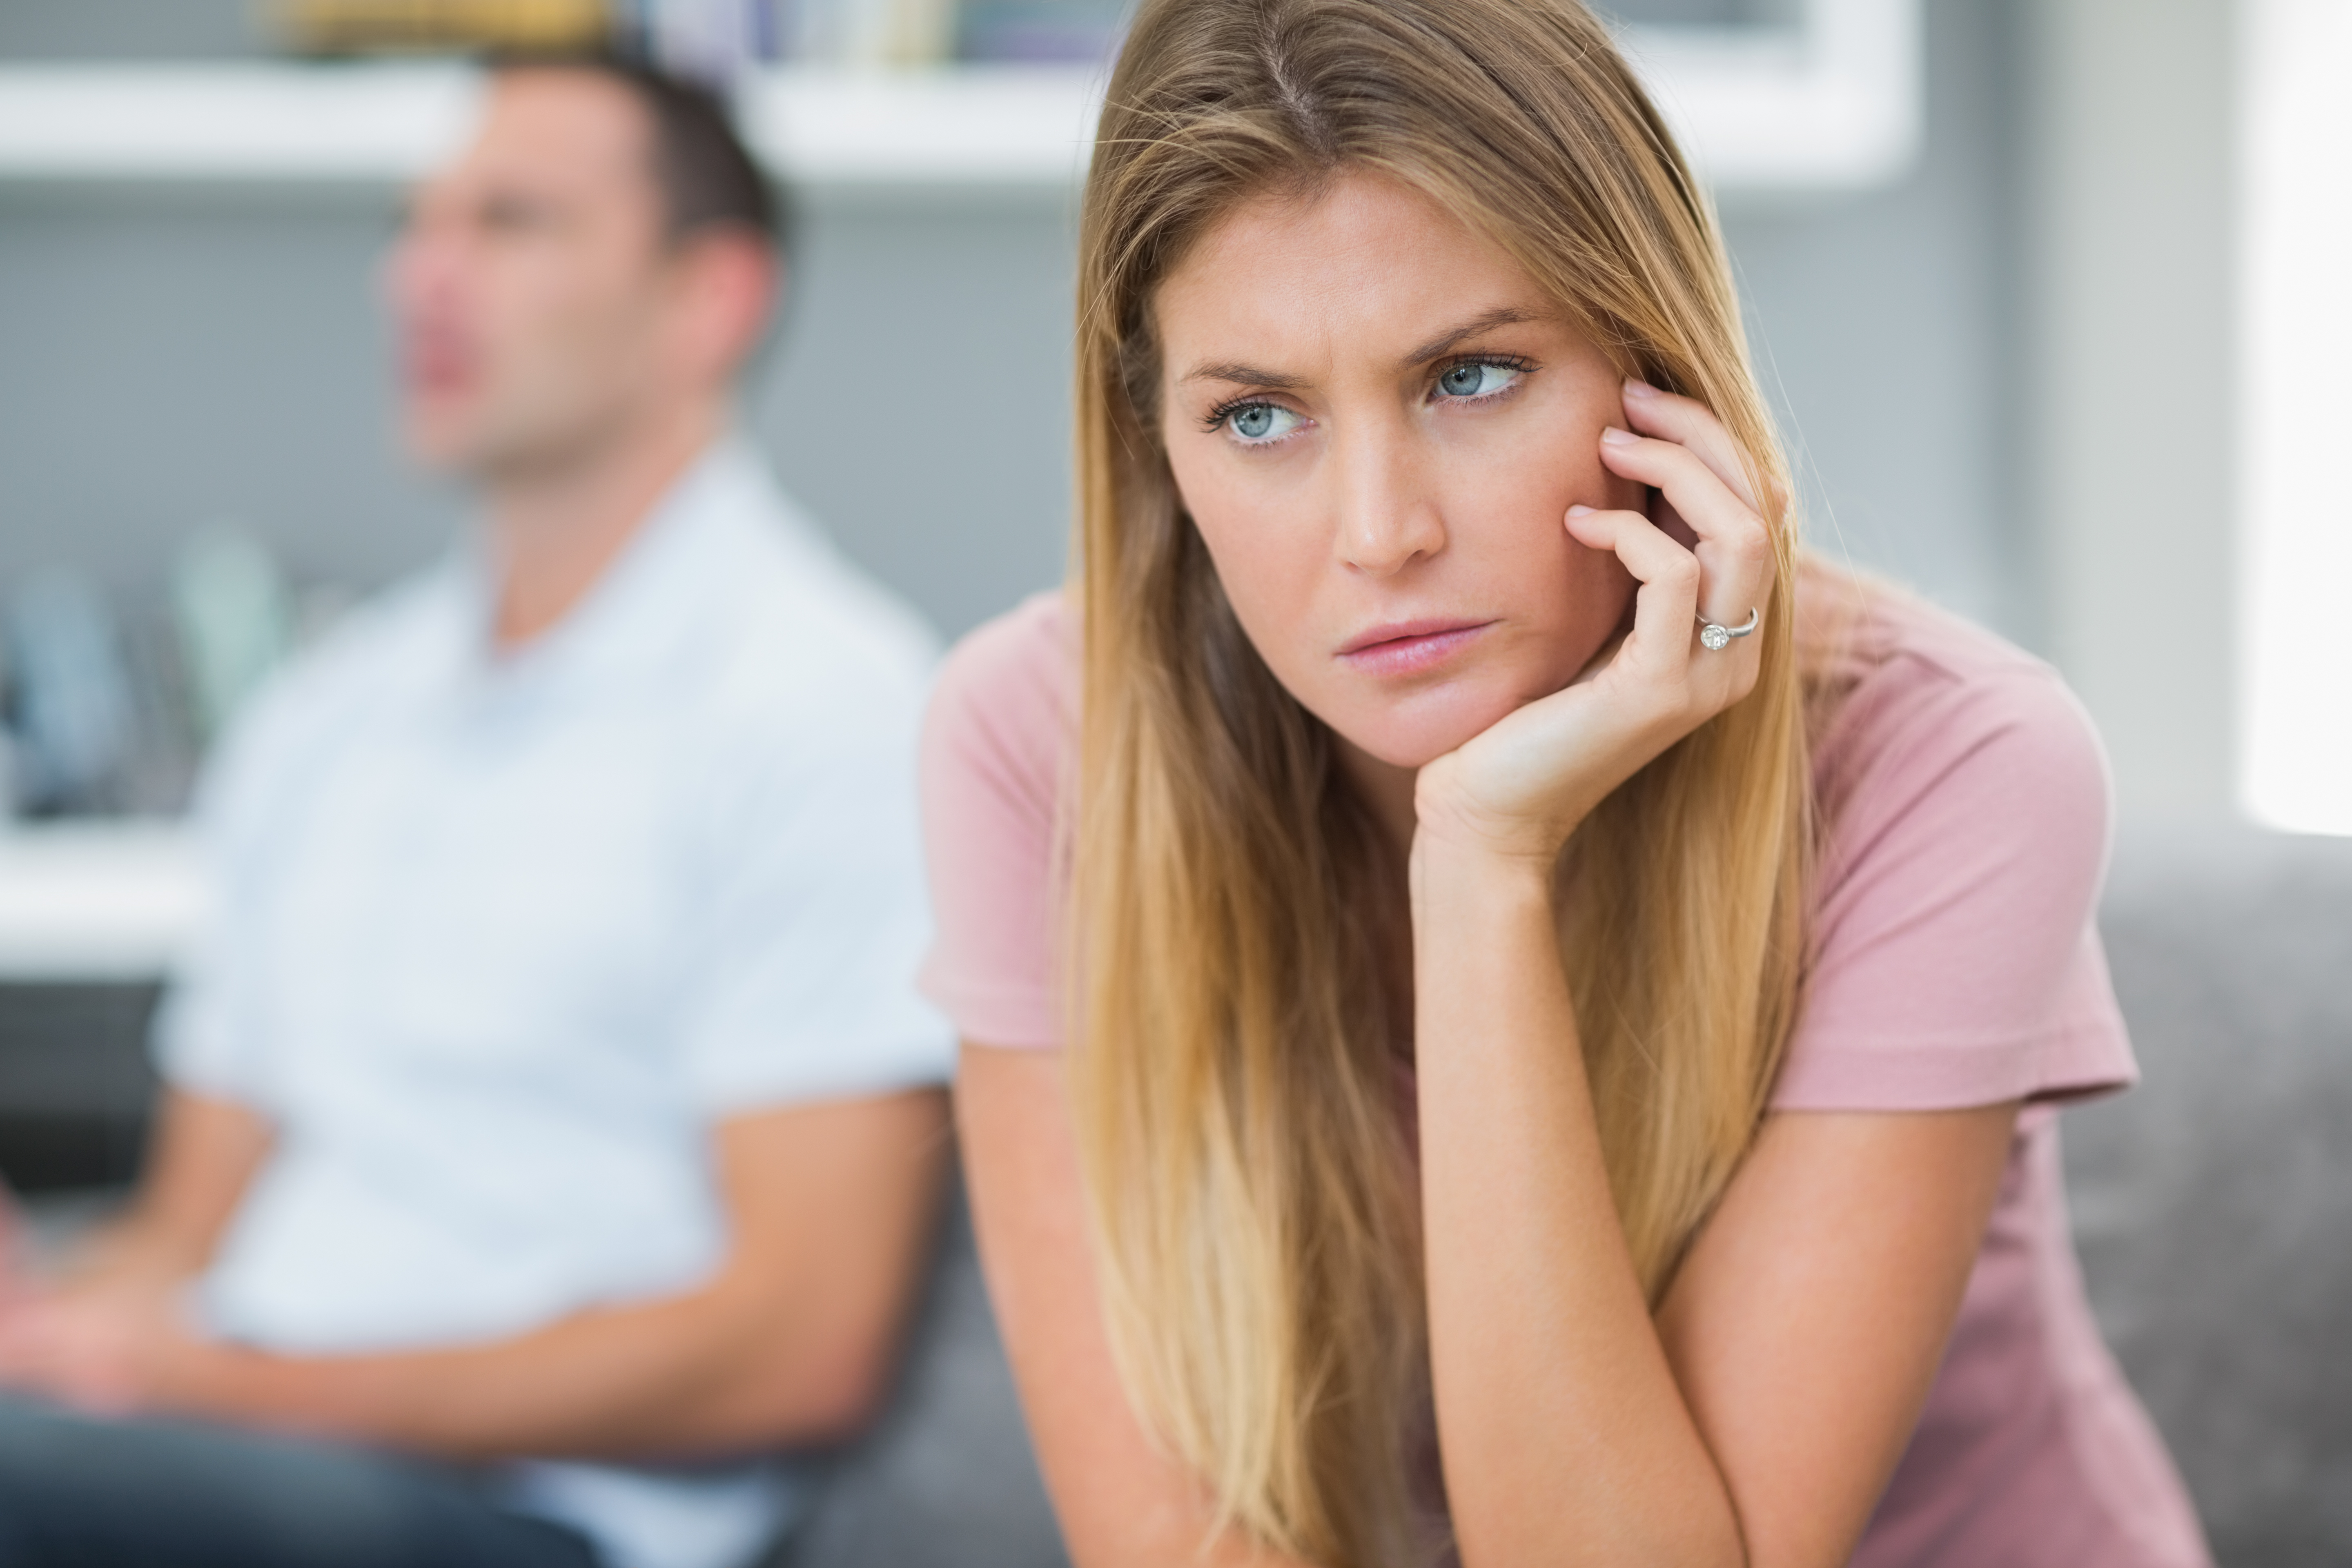 Mujer mirando molesta | Fuente: Shutterstock